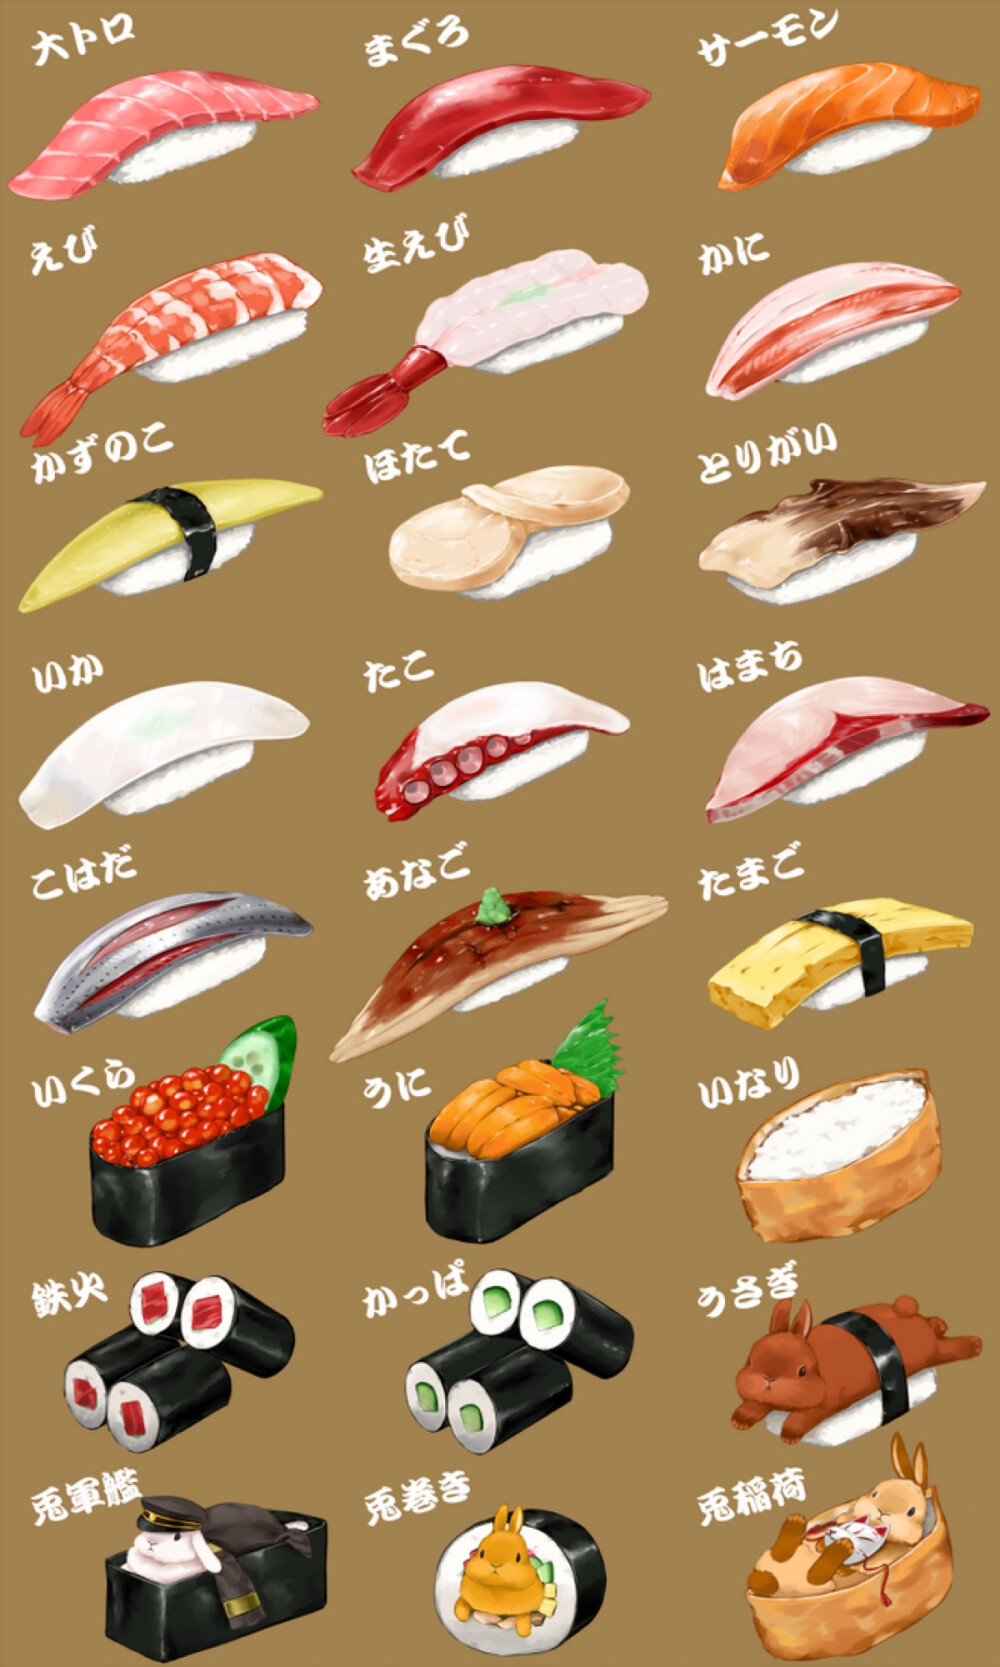 各种寿司